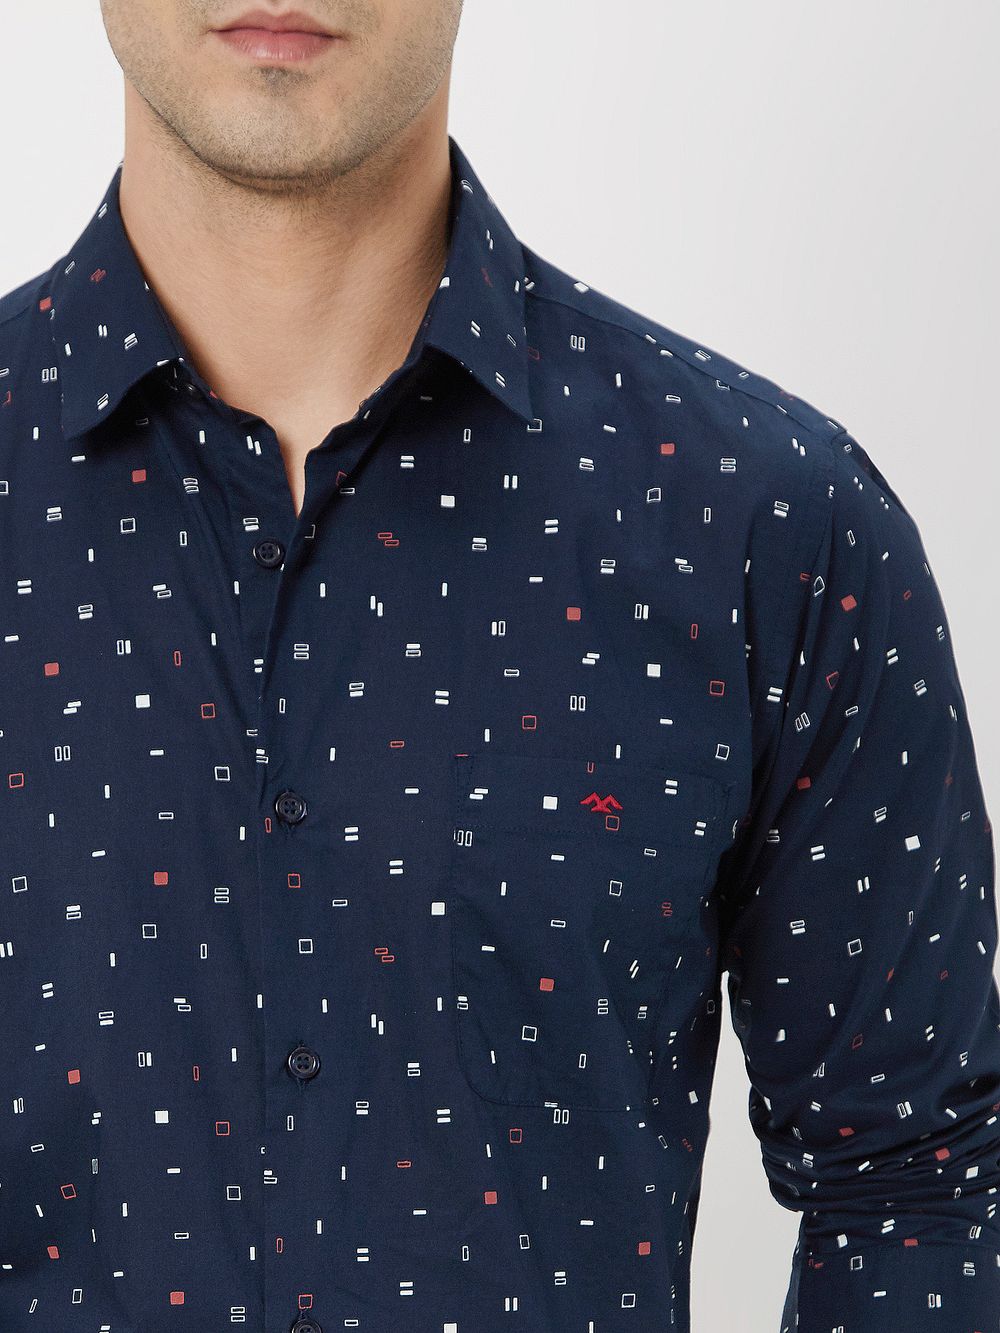 Navy & Red Geometric Print Shirt